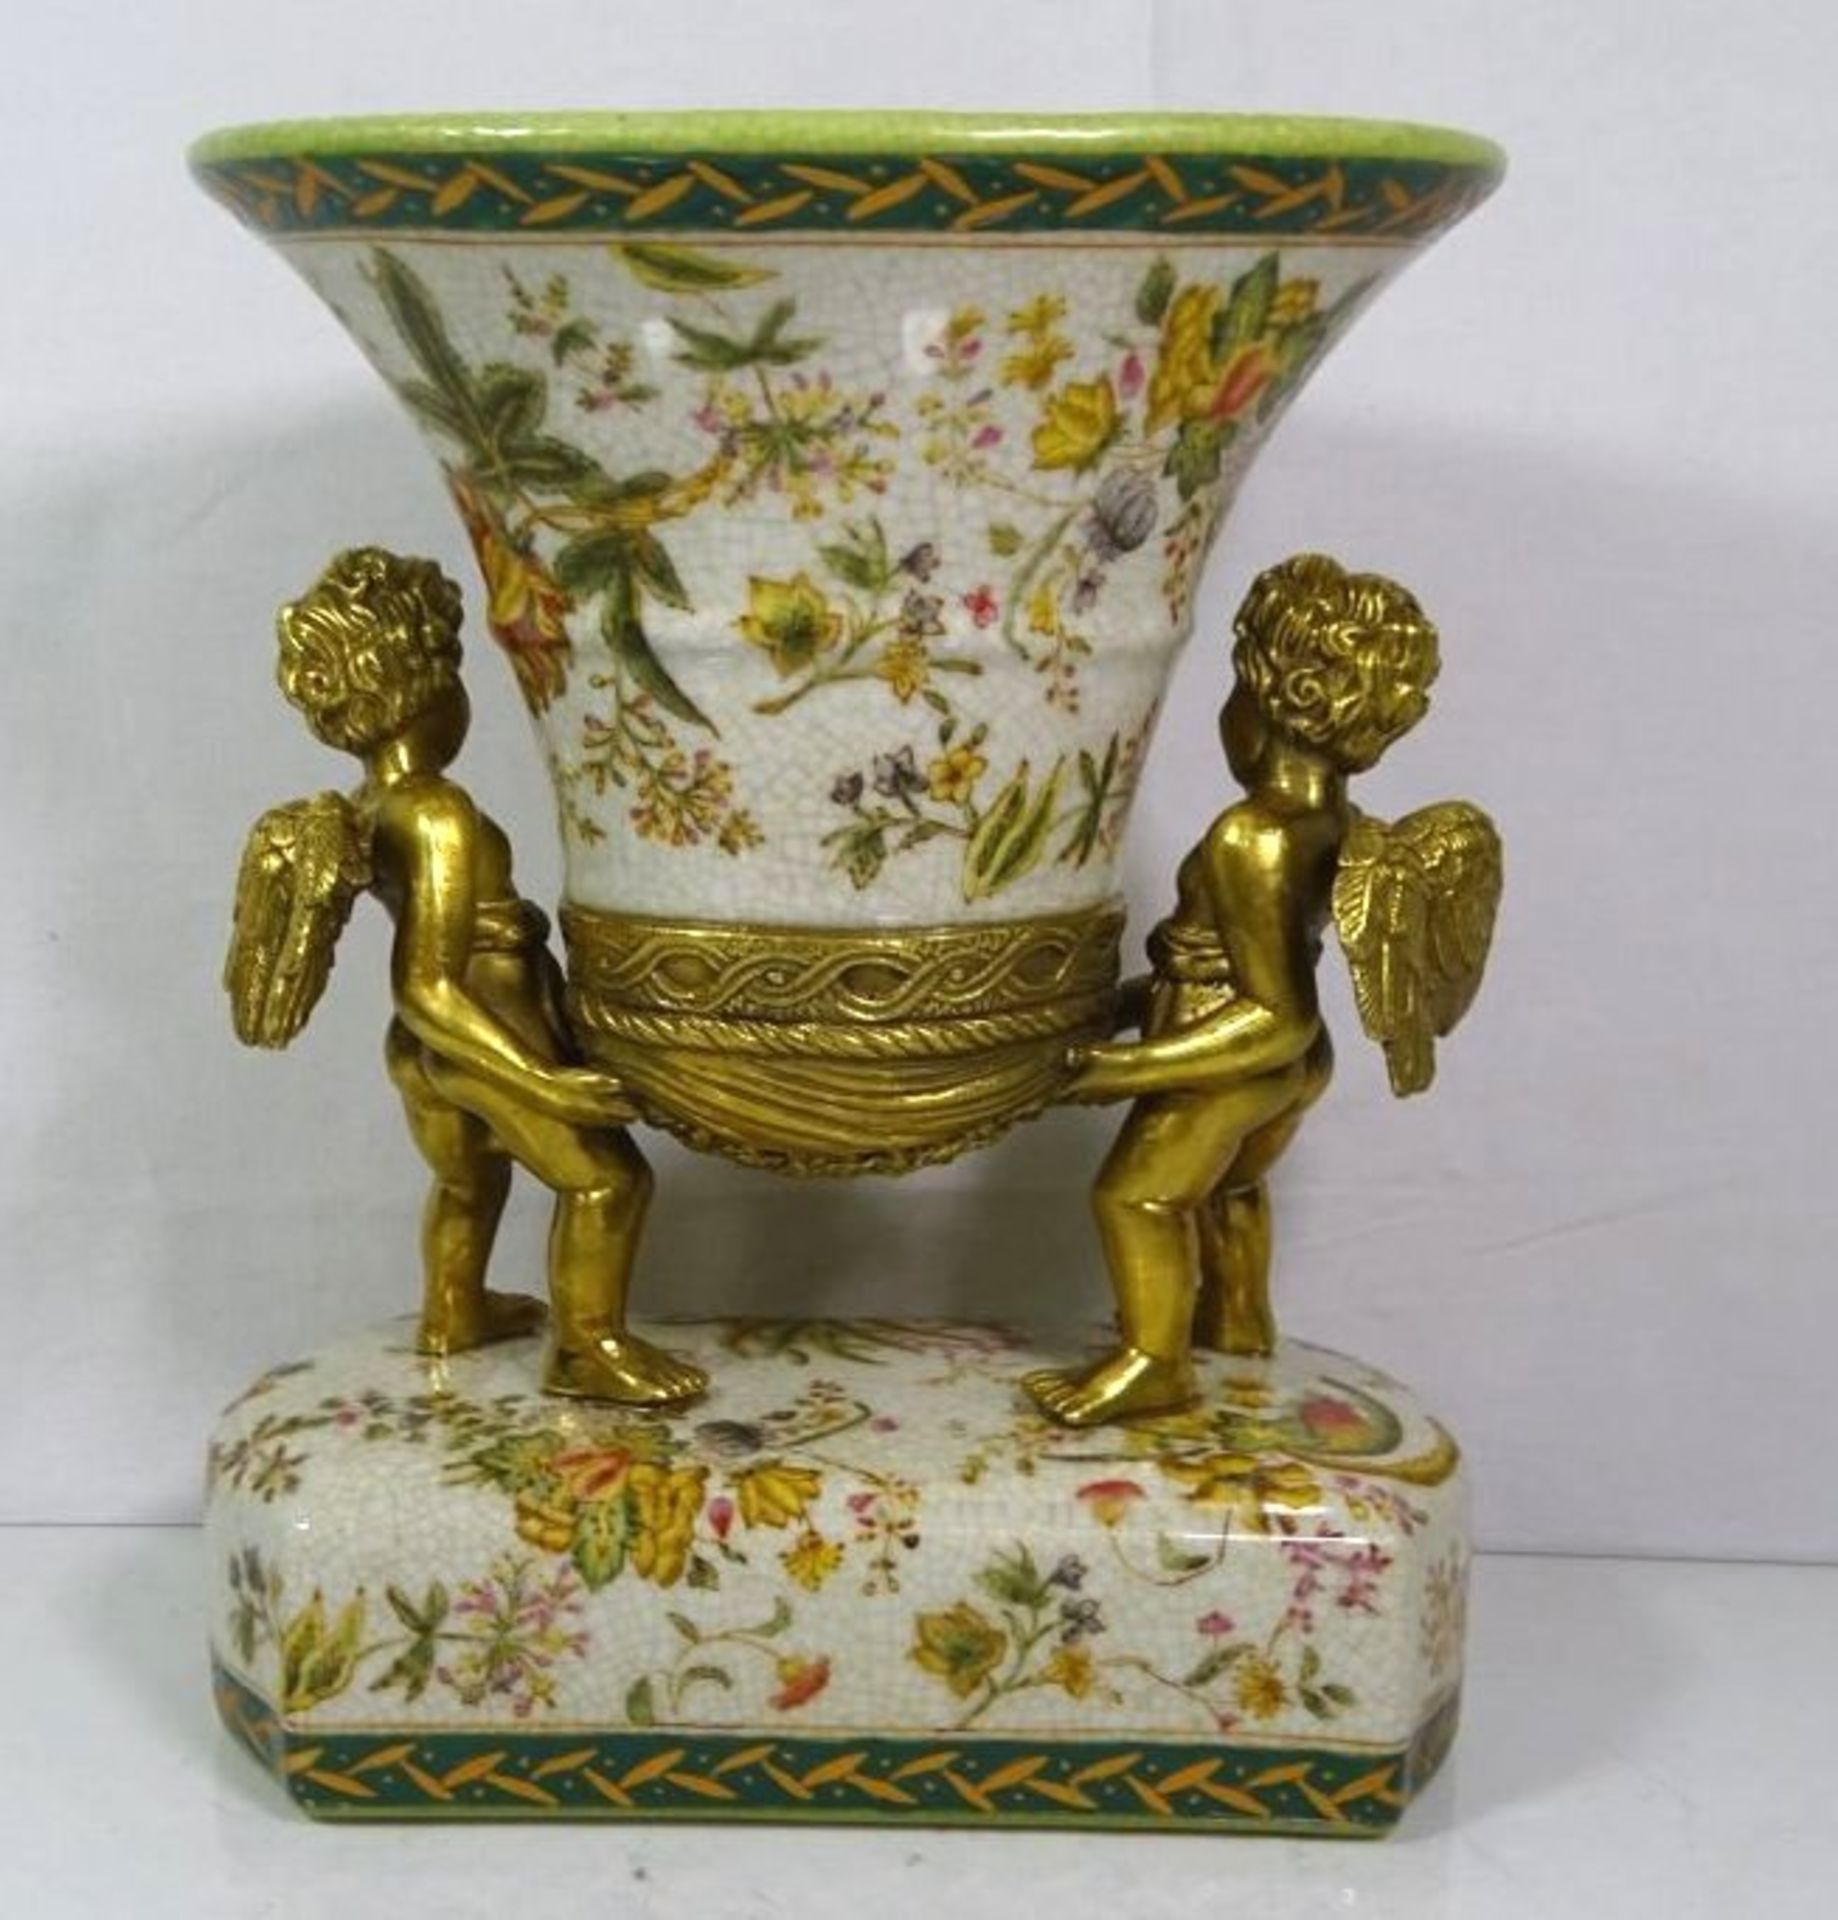 Vase getragen von 2 Bronze Putti, florale Bemalung, gemarkt, 20. Jhd., H-26cm B-24cm T-16cm.- - - - Bild 3 aus 4